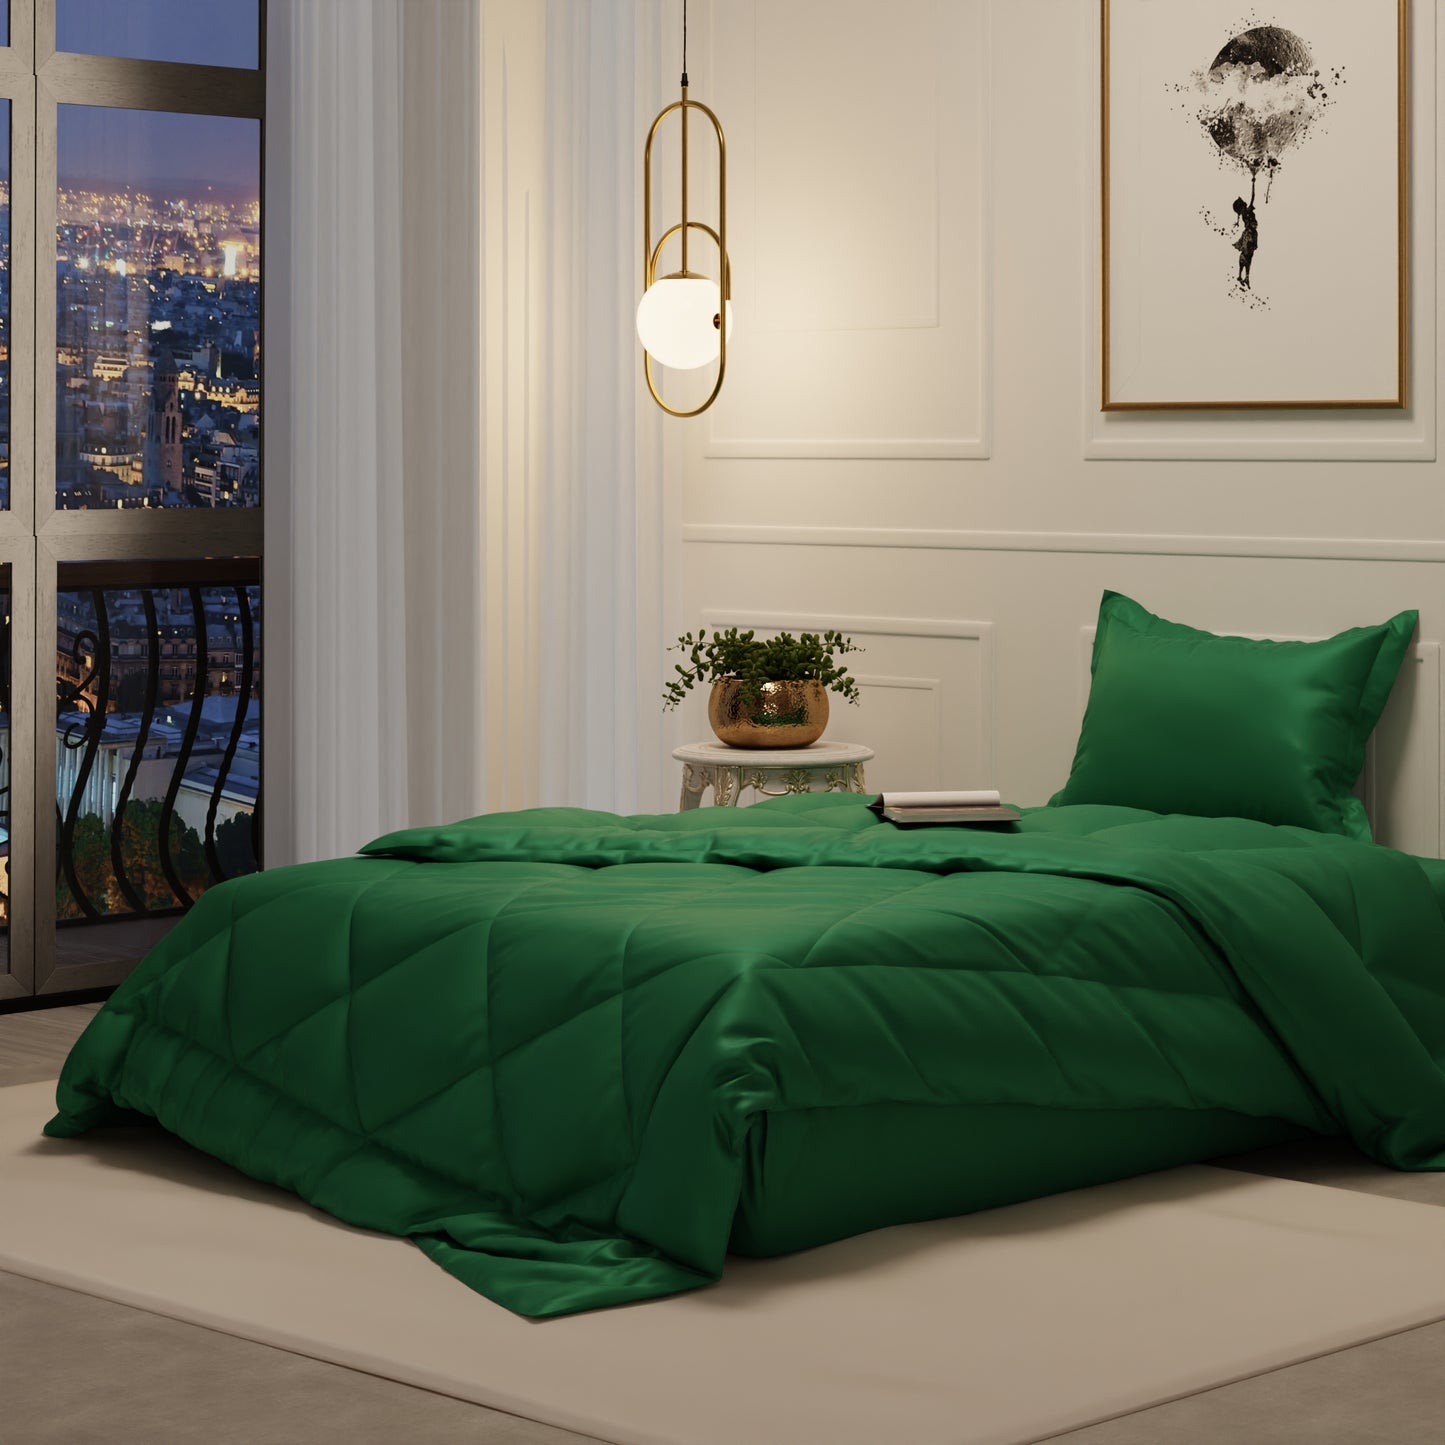 Emerald Green Comforter